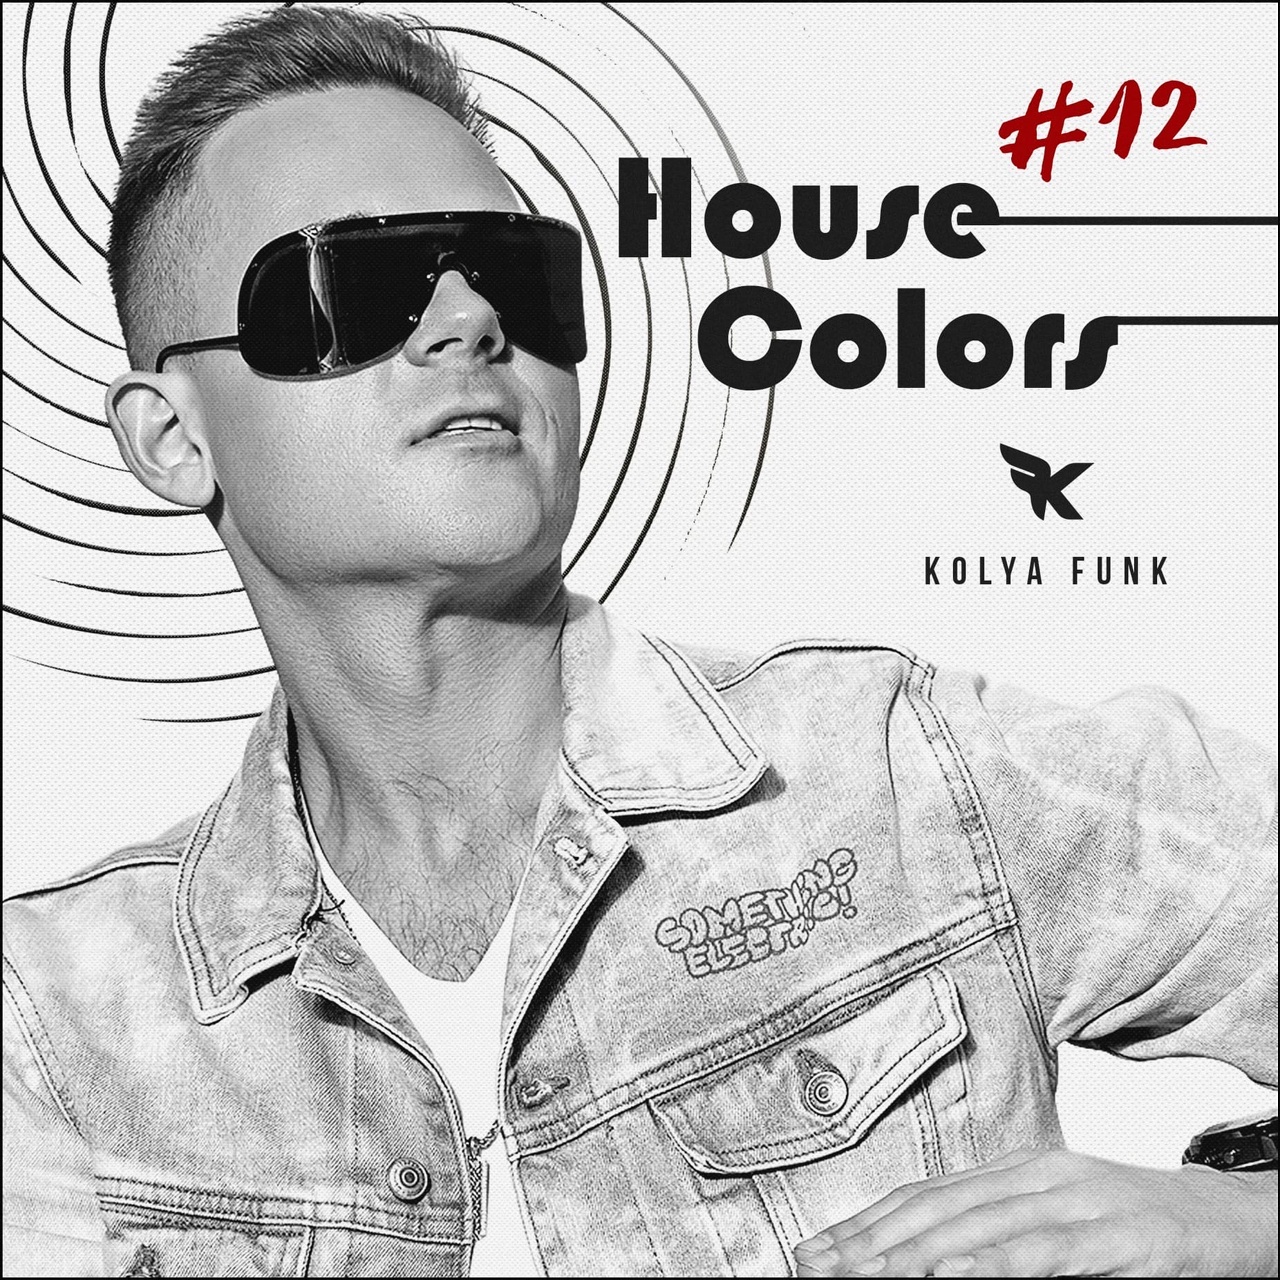 ഡൗൺലോഡ് Kolya Funk - House Colors #012